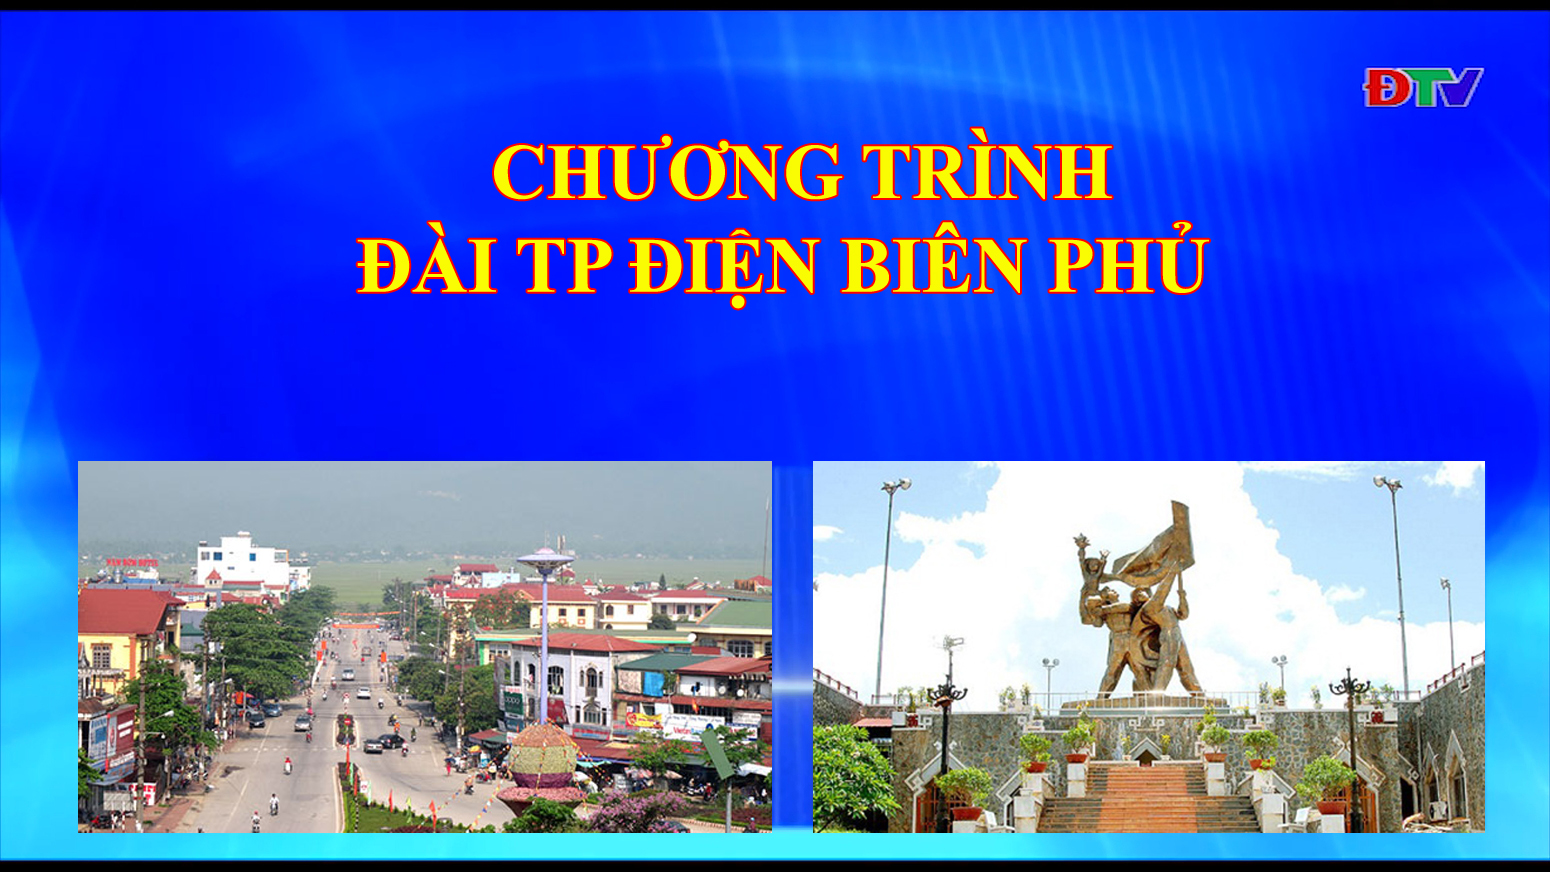 Đài thành phố Điện Biên Phủ (Ngày 10/03/2020)